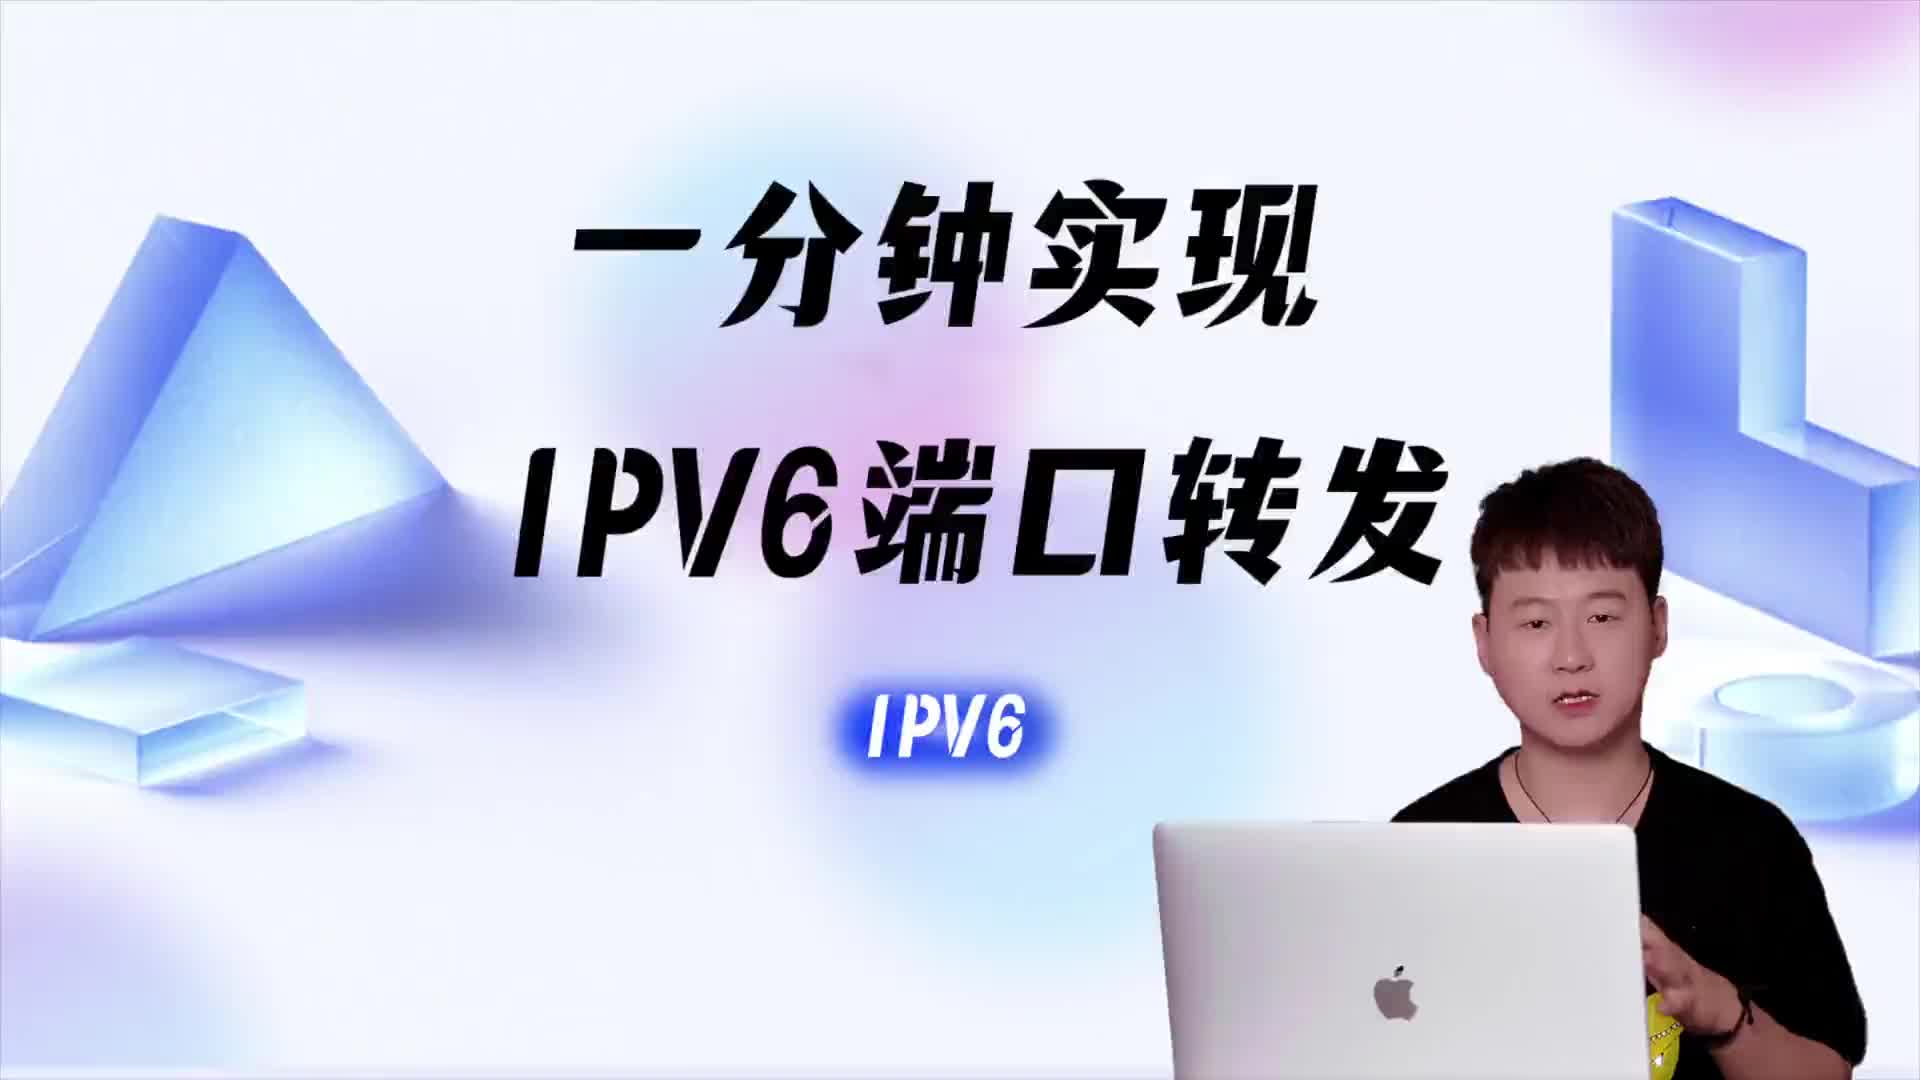 一分鐘實現IPV6端口轉發